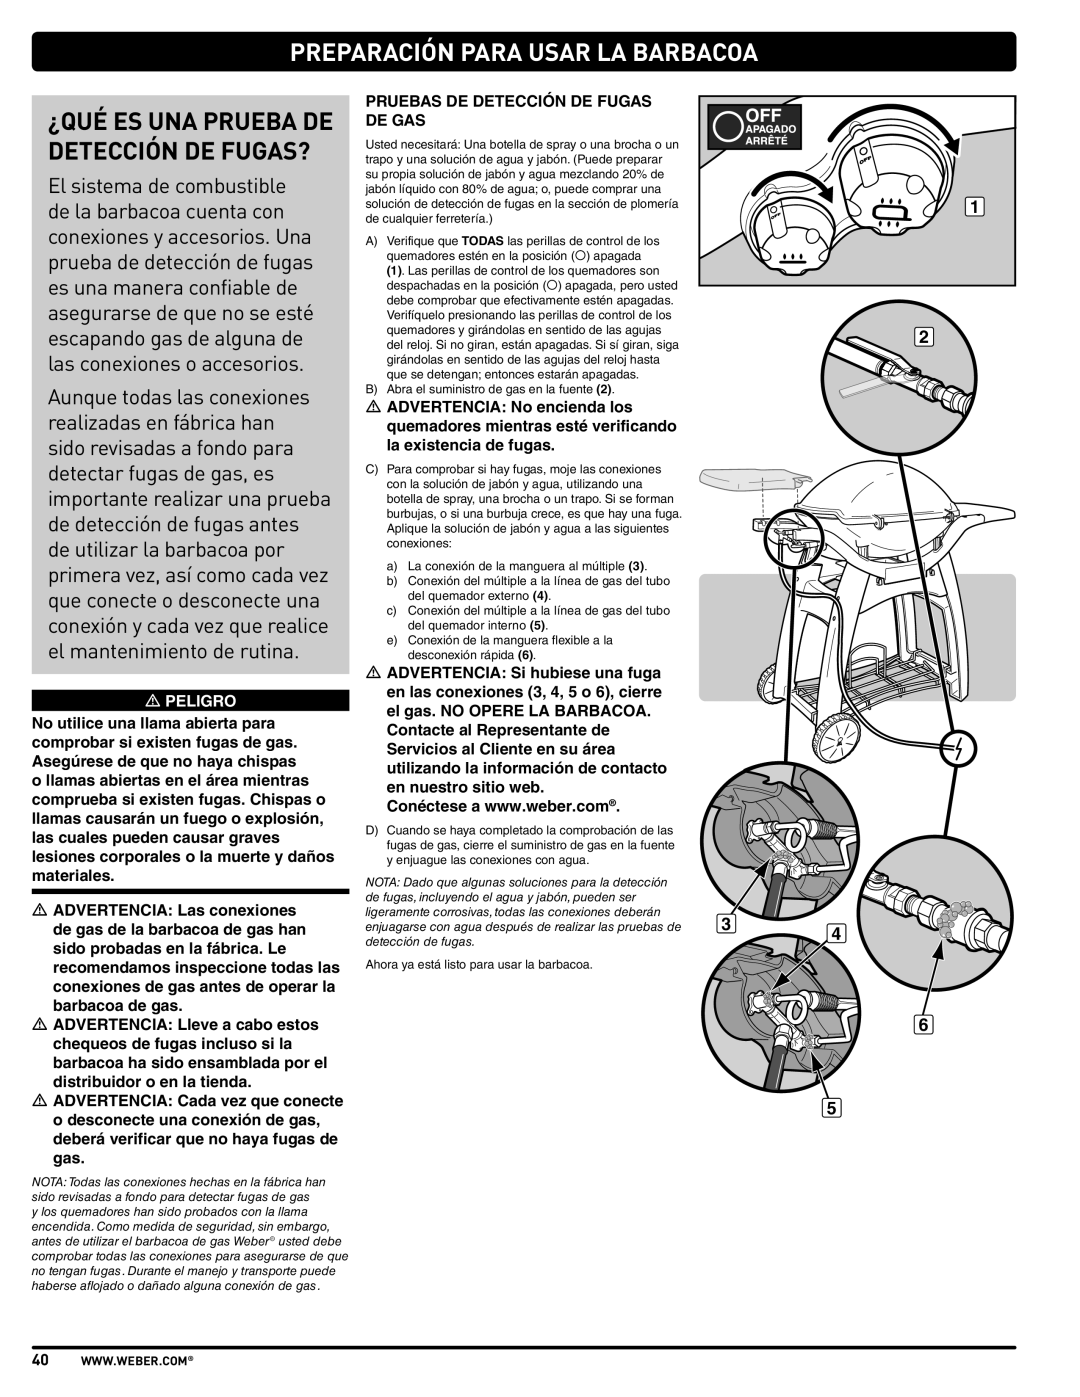 Weber 57515 manual Preparación Para Usar La Barbacoa, ¿Qué Es Una Prueba De Detección De Fugas? 